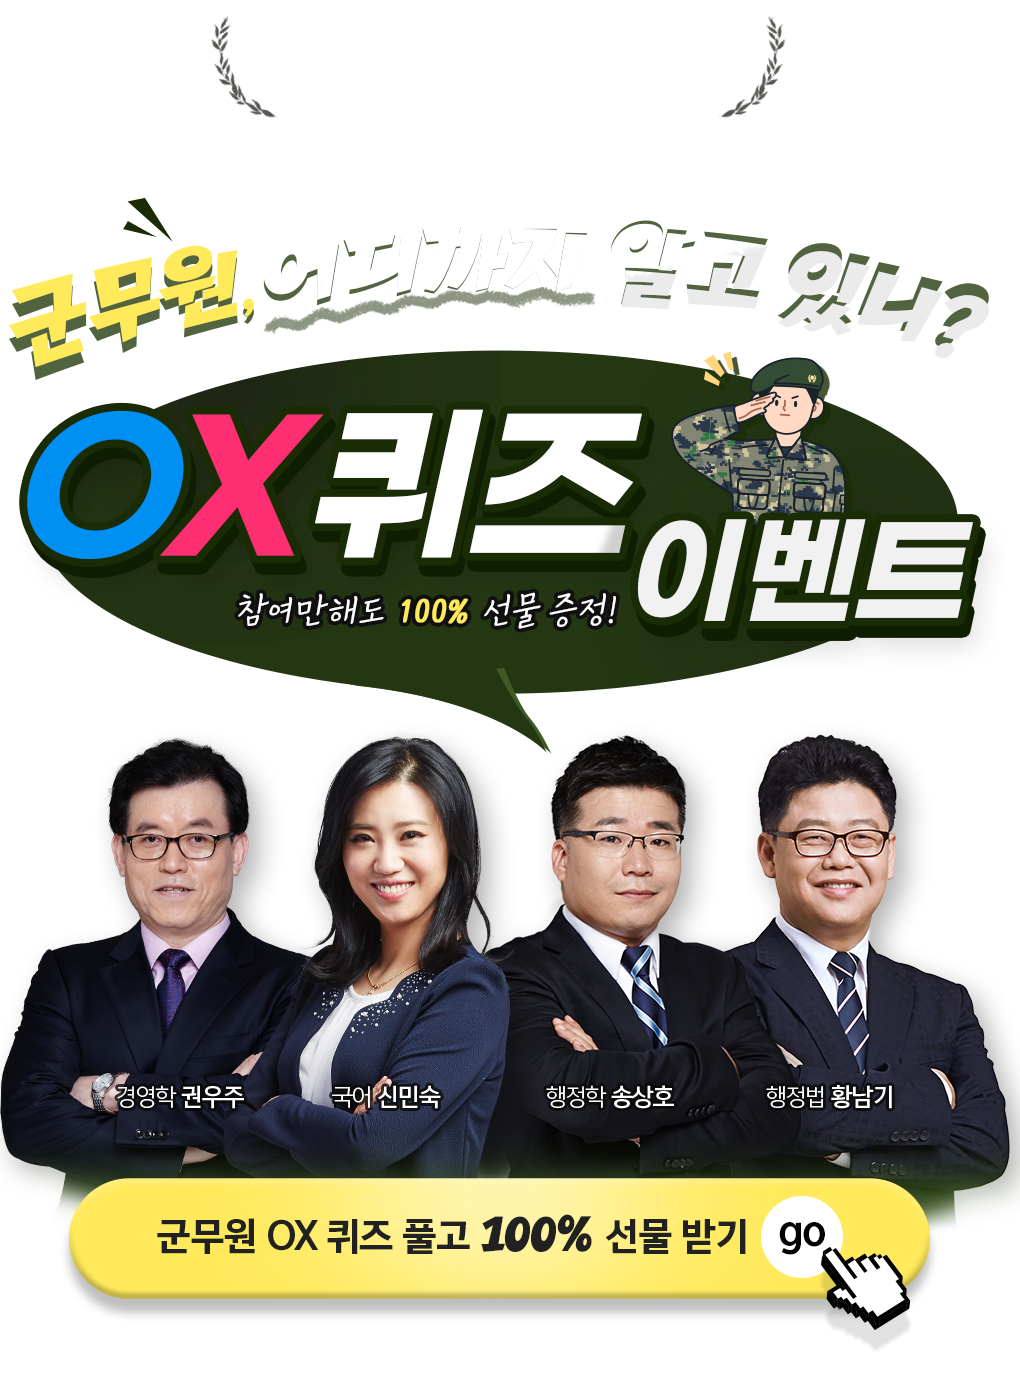 군무원 OX 퀴즈 이벤트